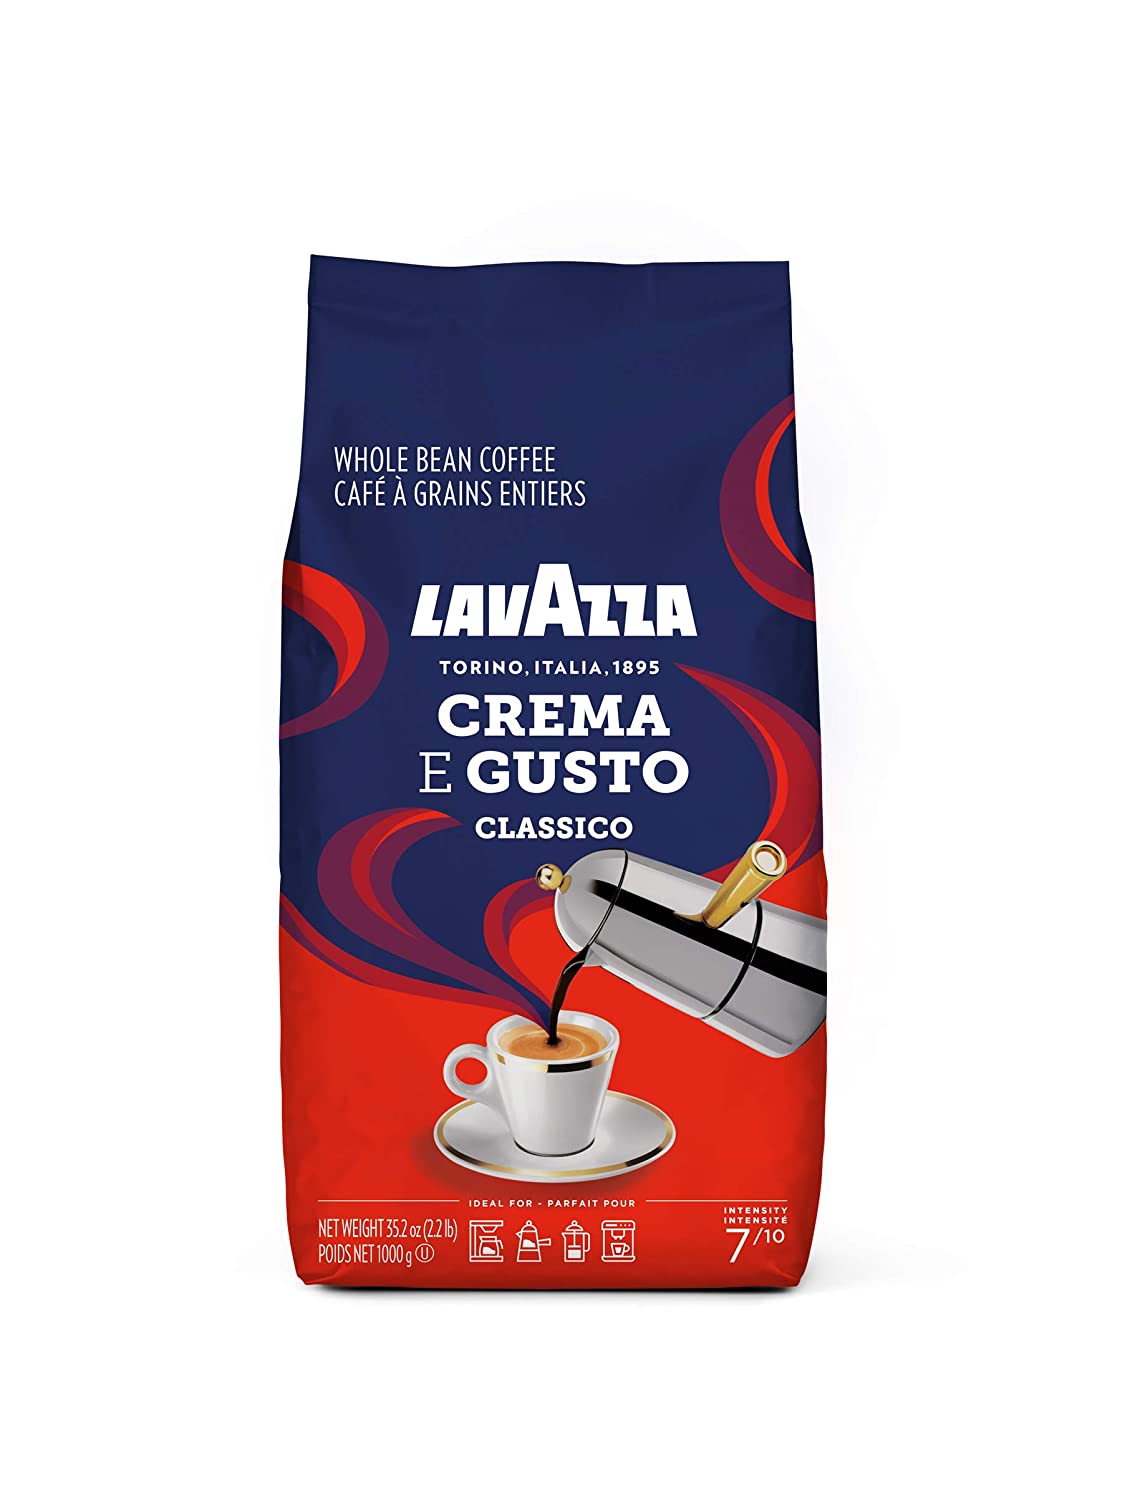 http://supermarketitaly.com/cdn/shop/products/lavazza-crema-e-gusto-classico-whole-bean-22-lb-coffee-beverages-lavazza-580724.jpg?v=1672758900